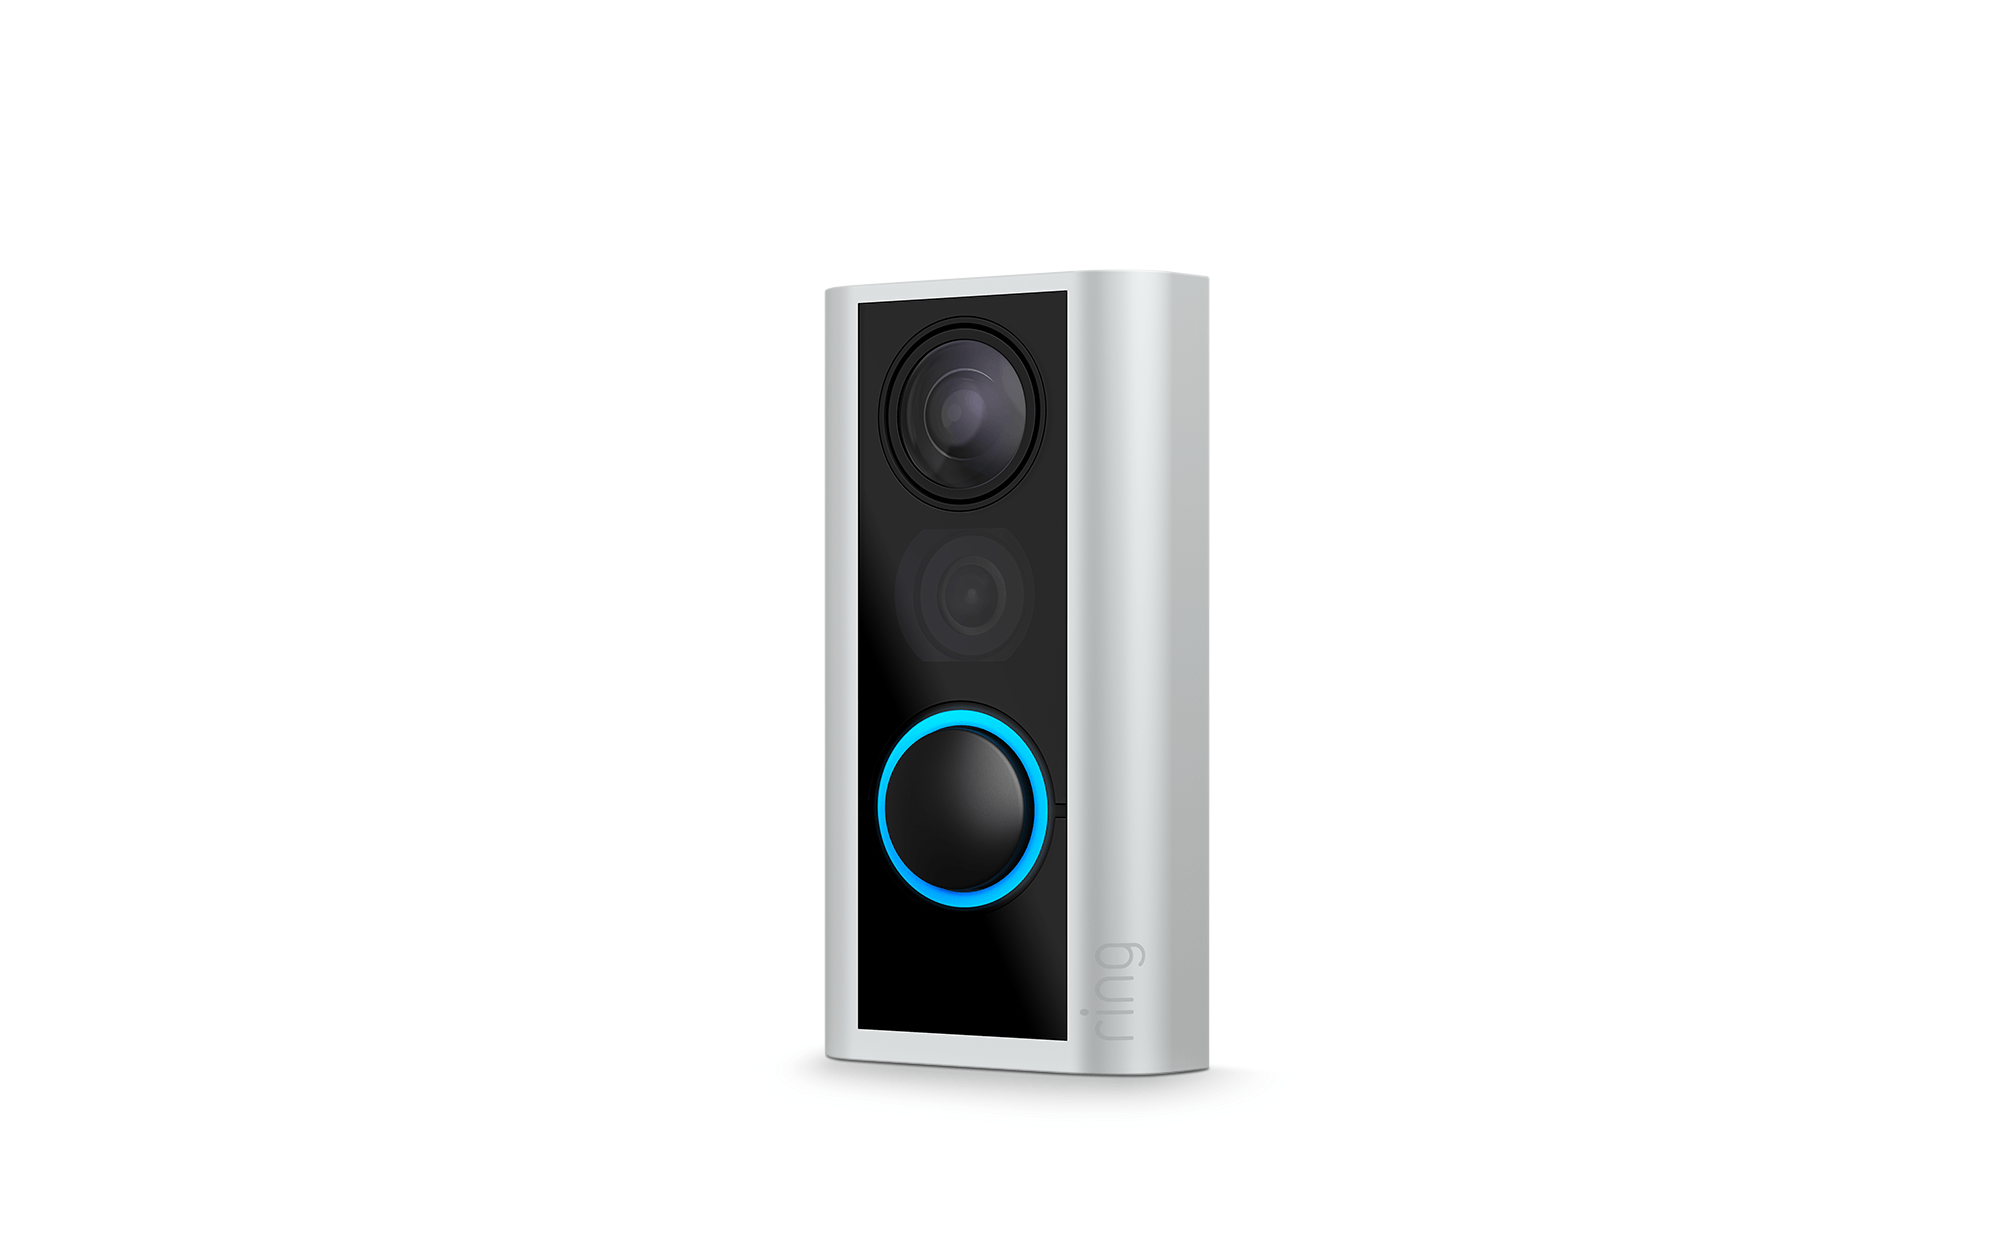 Door View Cam: Videoportero de la empresa Ring con compatibilidad con Alexa anunciado en el CES 2019